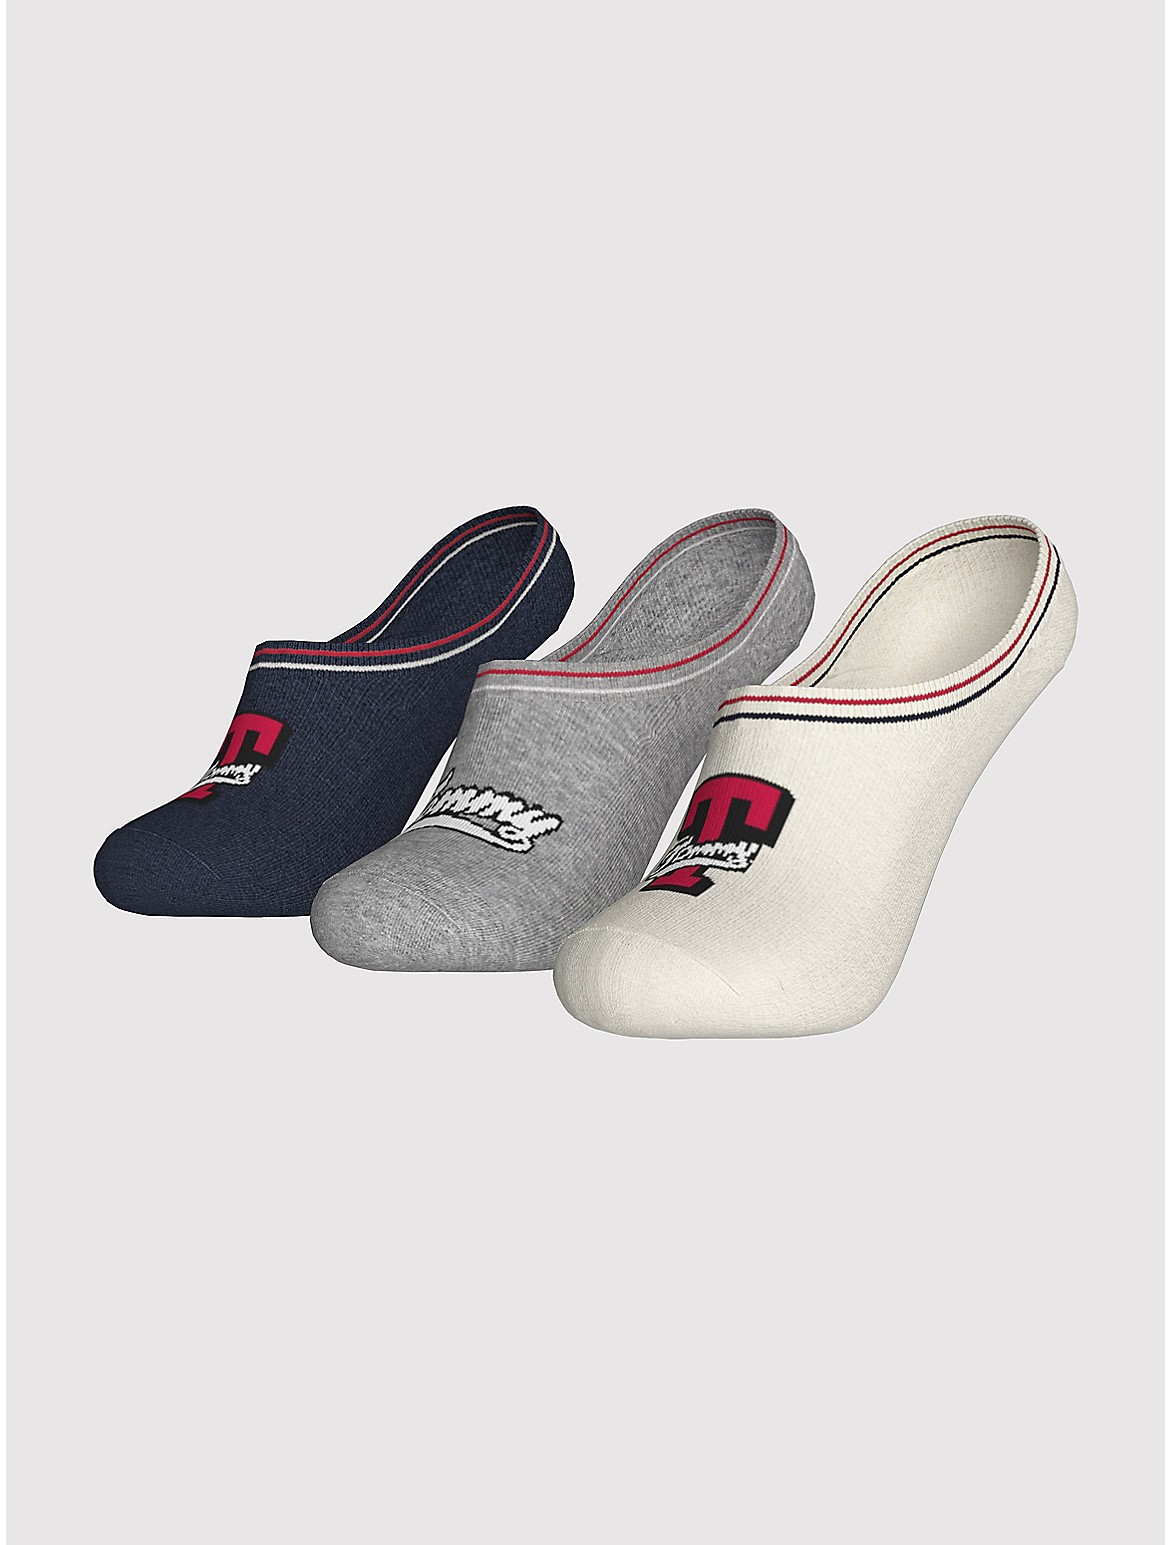 Tommy Hilfiger Girls' Kids' Liner Sock 3-Pack - White - M